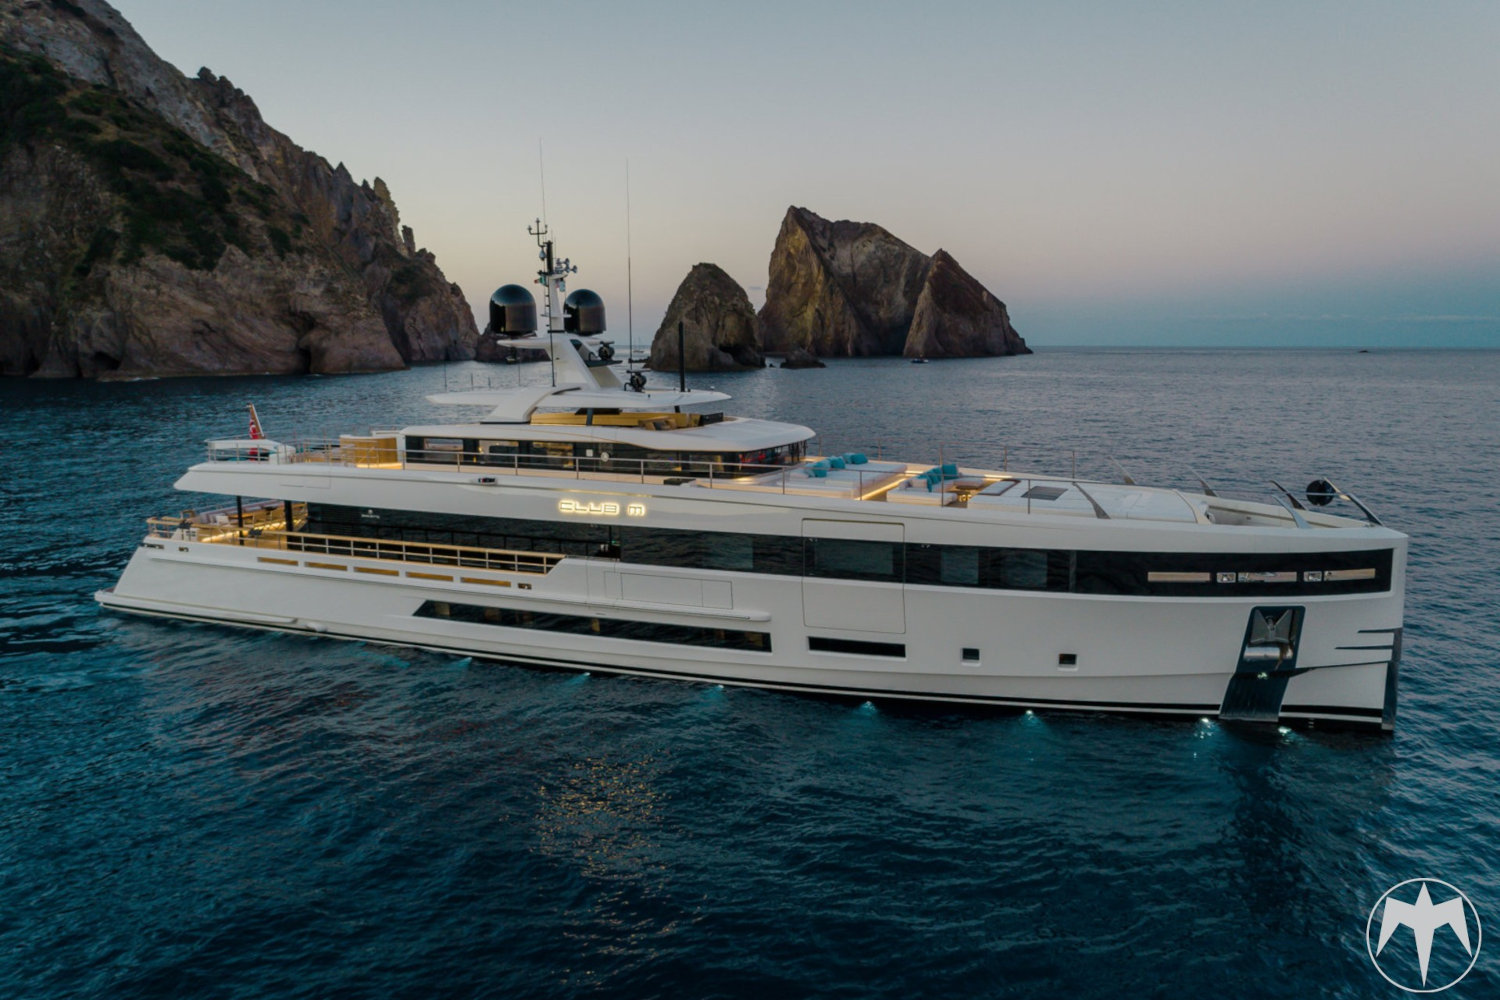 Monaco Yacht Show 2021 with Ulysse Nardin - Baglietto Club M yacht